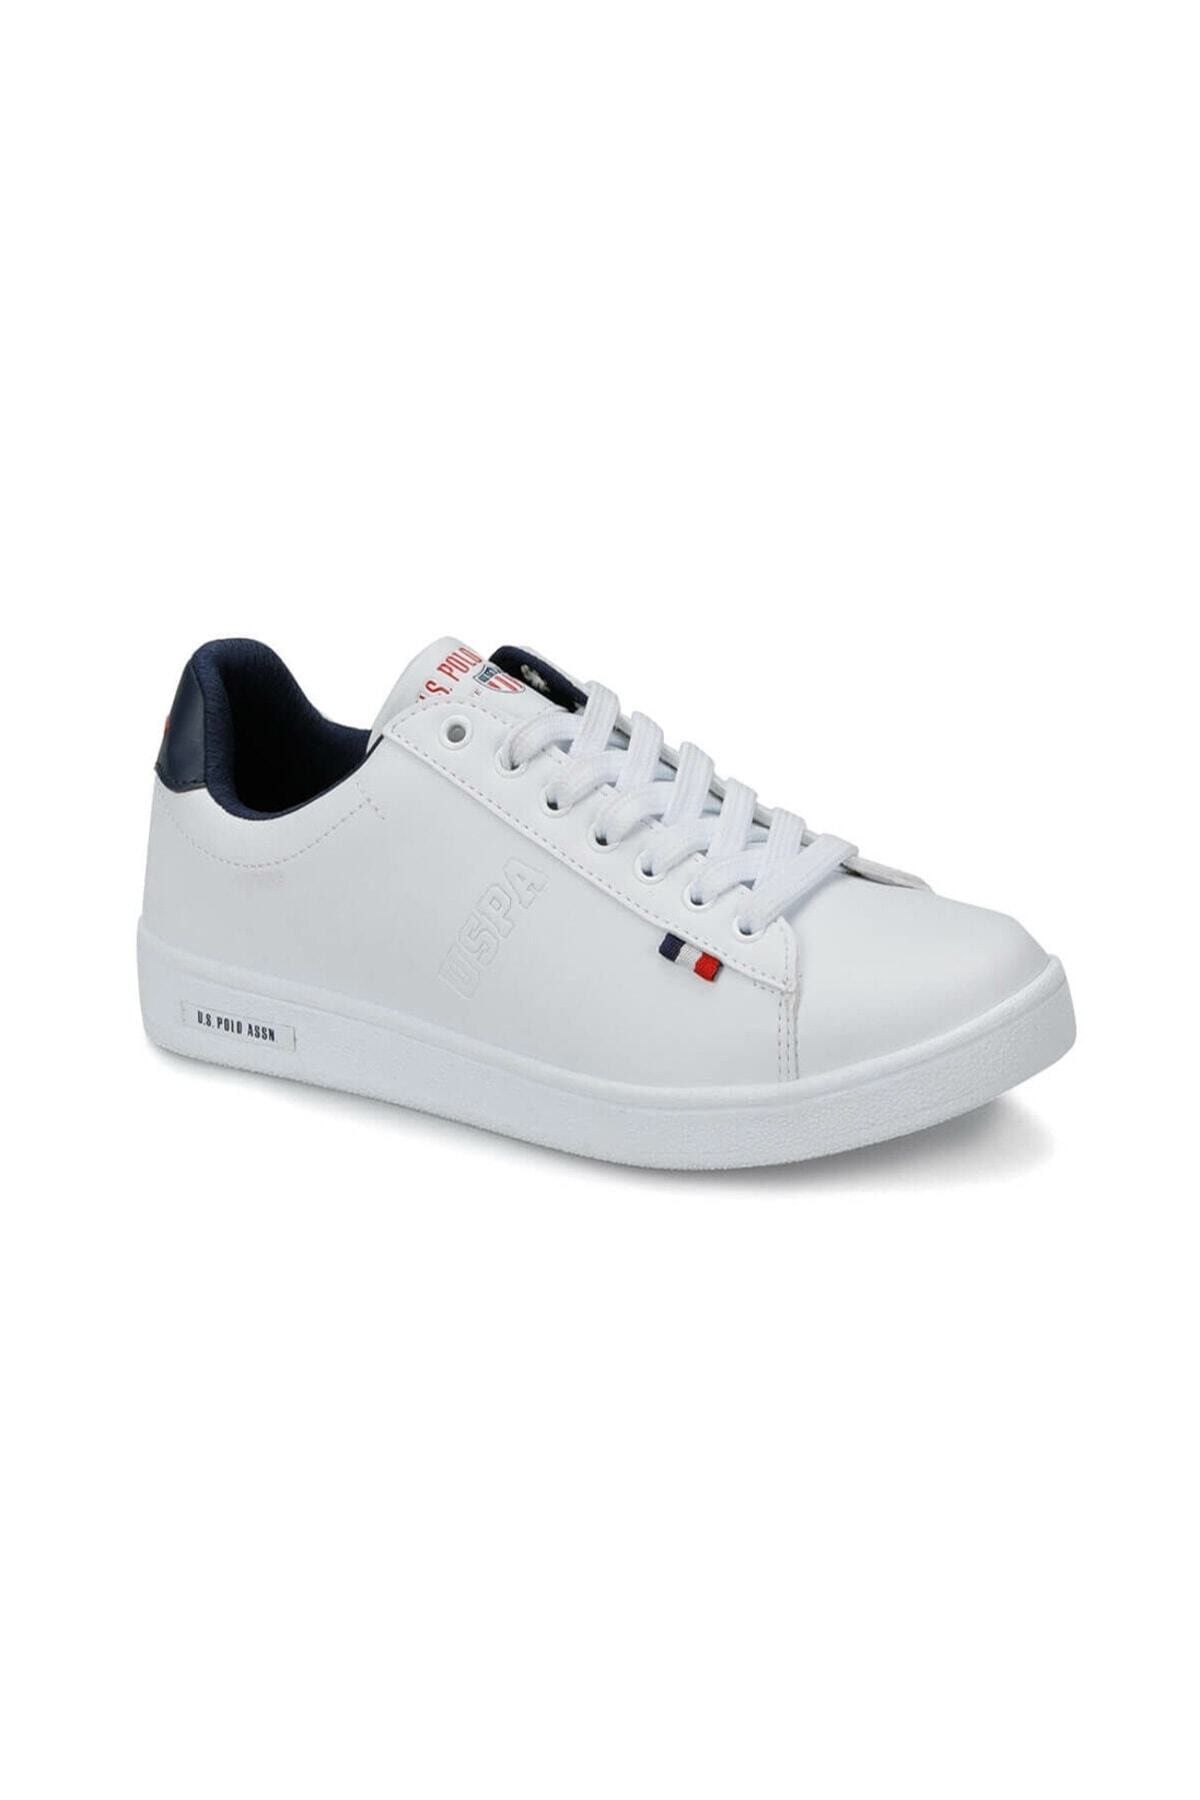 U.S. Polo Assn. FRANCO Beyaz Kadın Sneaker 100249587